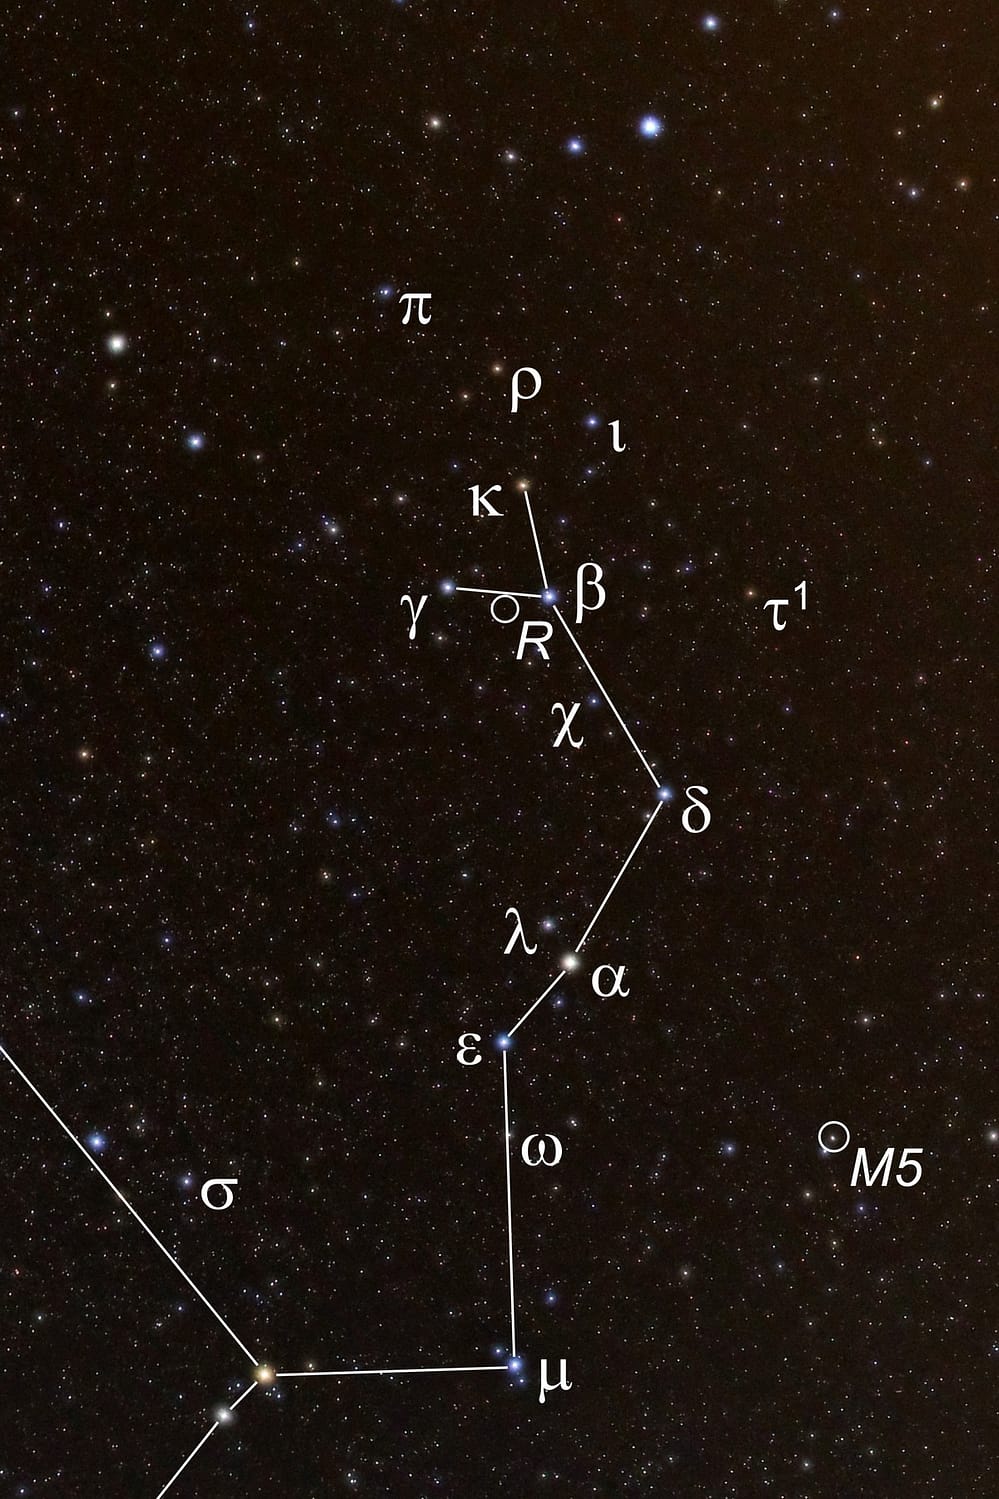 Die hellsten Sterne und besondere Beobachtungsobjekte im Kopf der Schlange, dem westlichen Teil des Sternbilds Schlange, sind mit ihren astronomischen Bezeichnungen markiert.